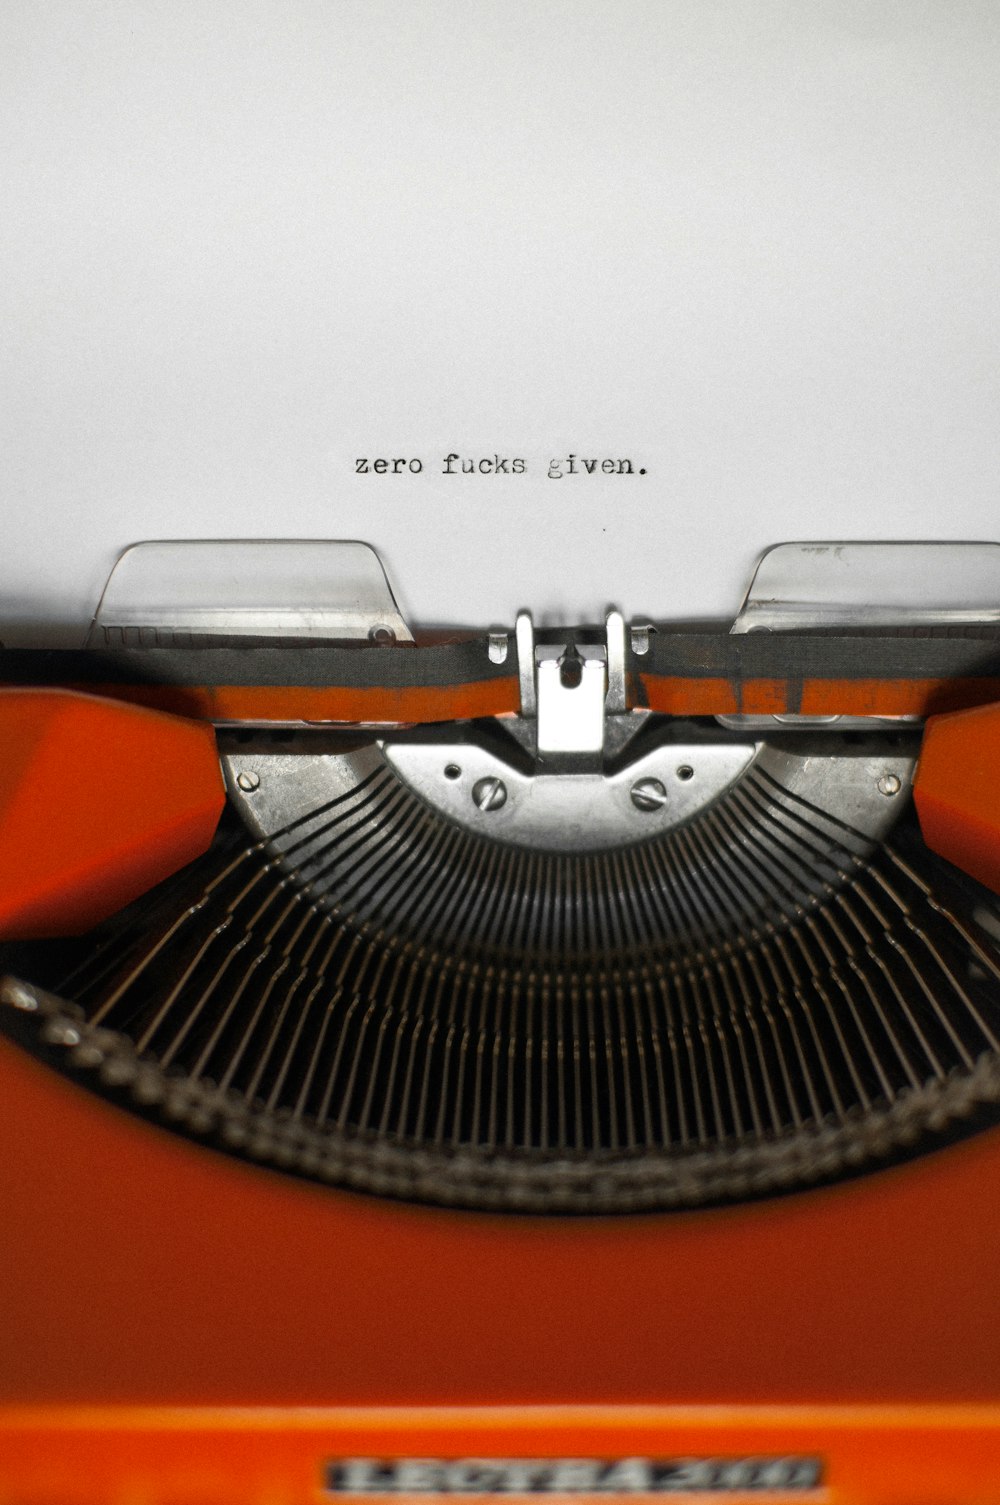 a close up of an orange typewriter